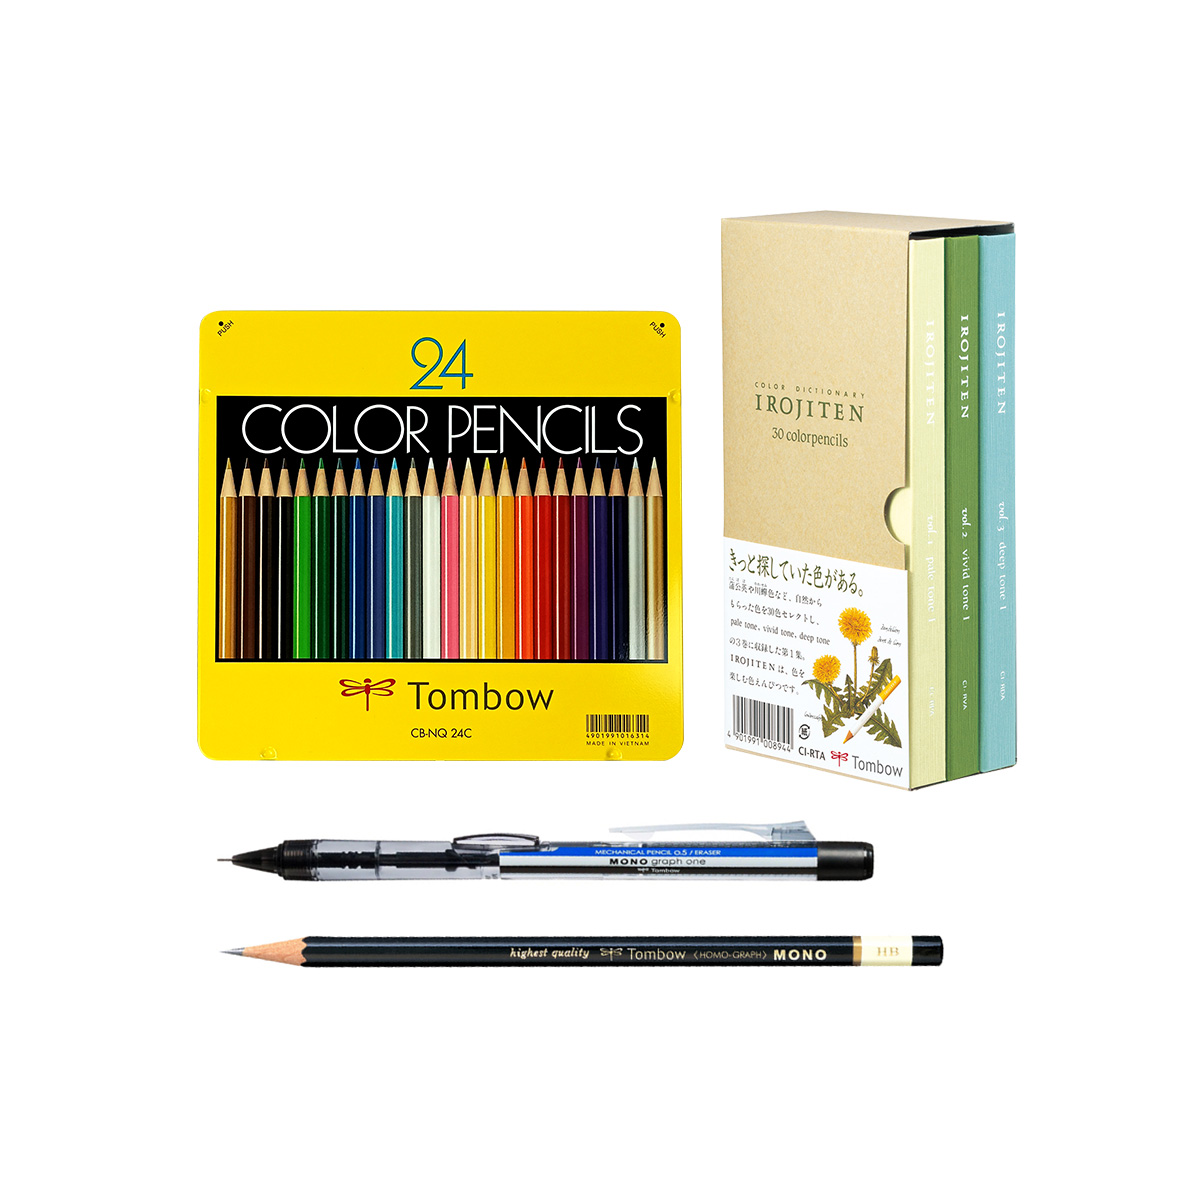 Pencils & Colored Pencils